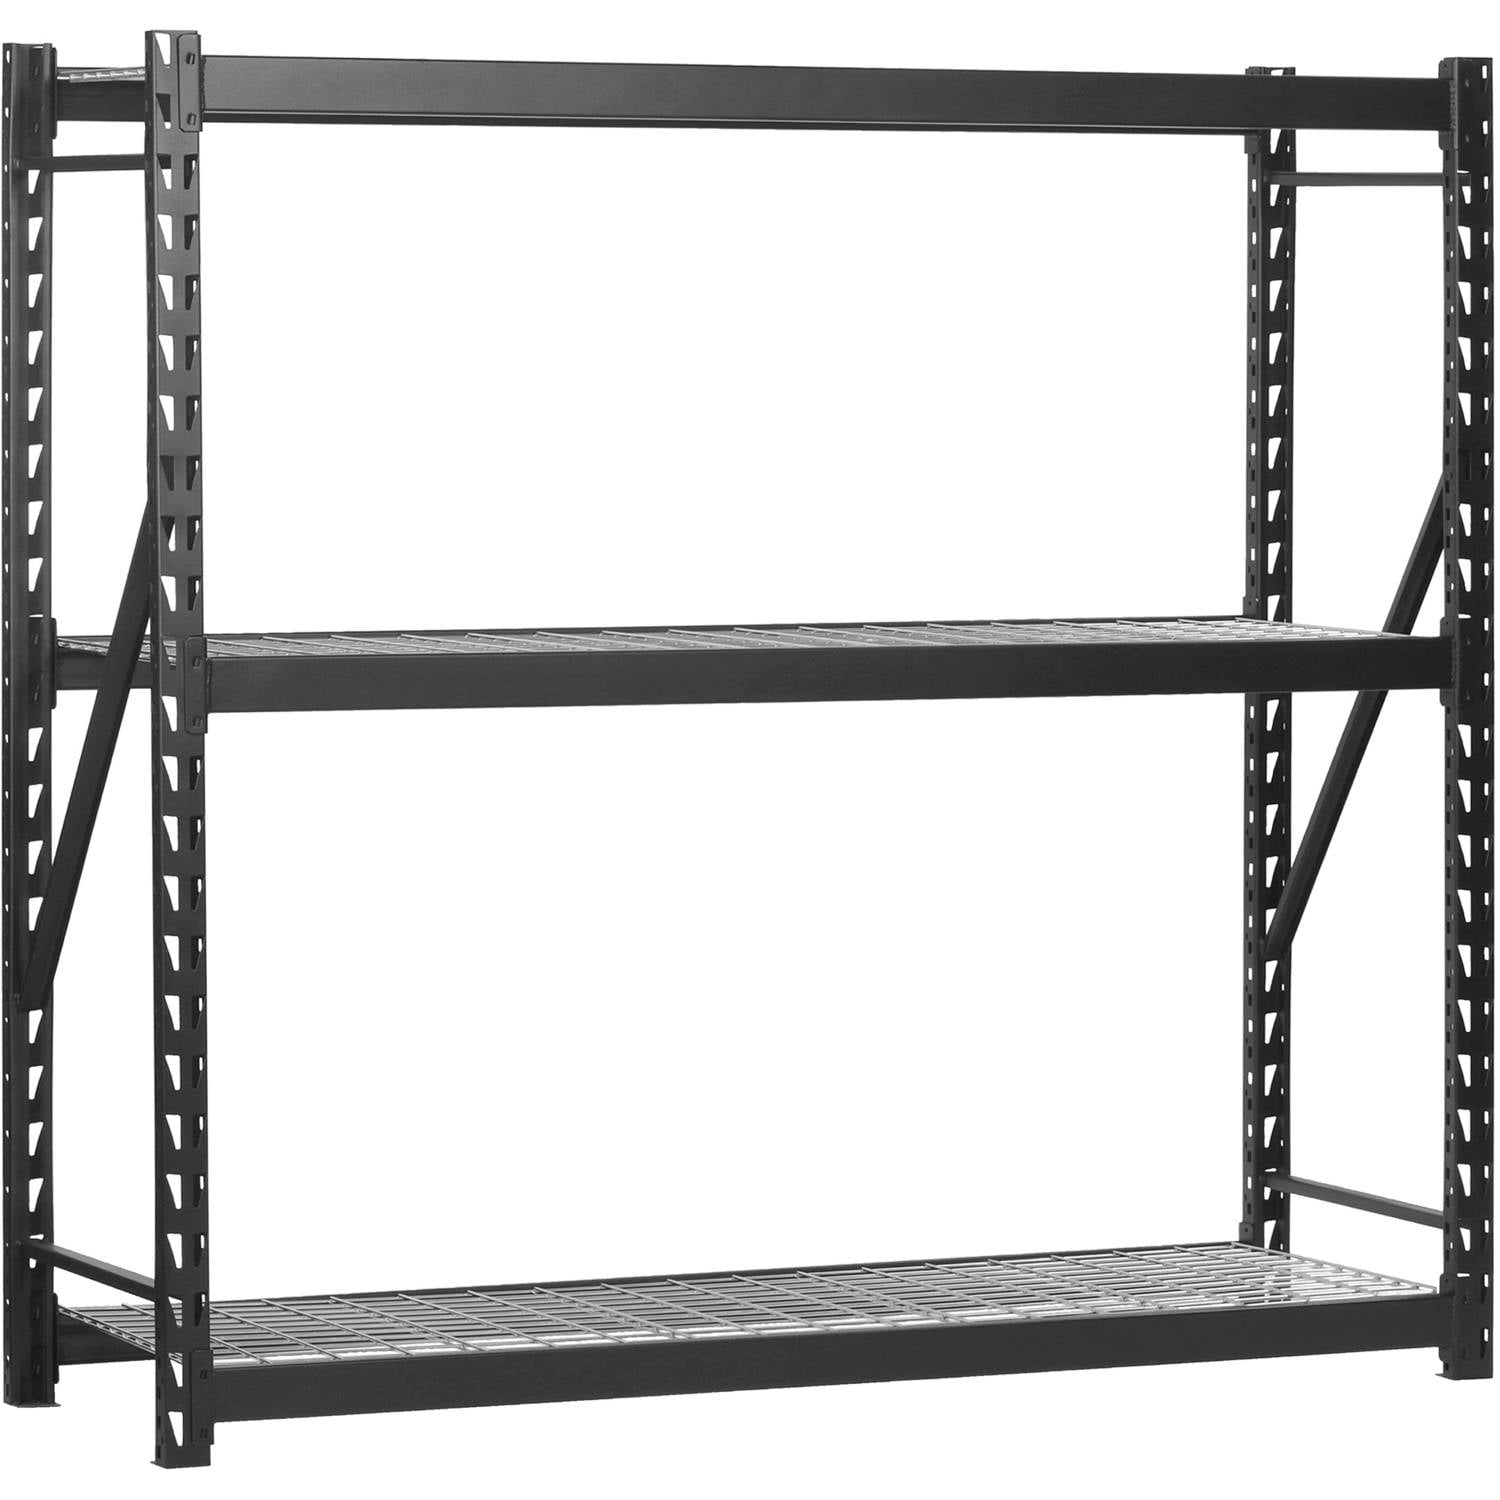 Steel Welded Storage Rack 150, 24 W Shelving Unit